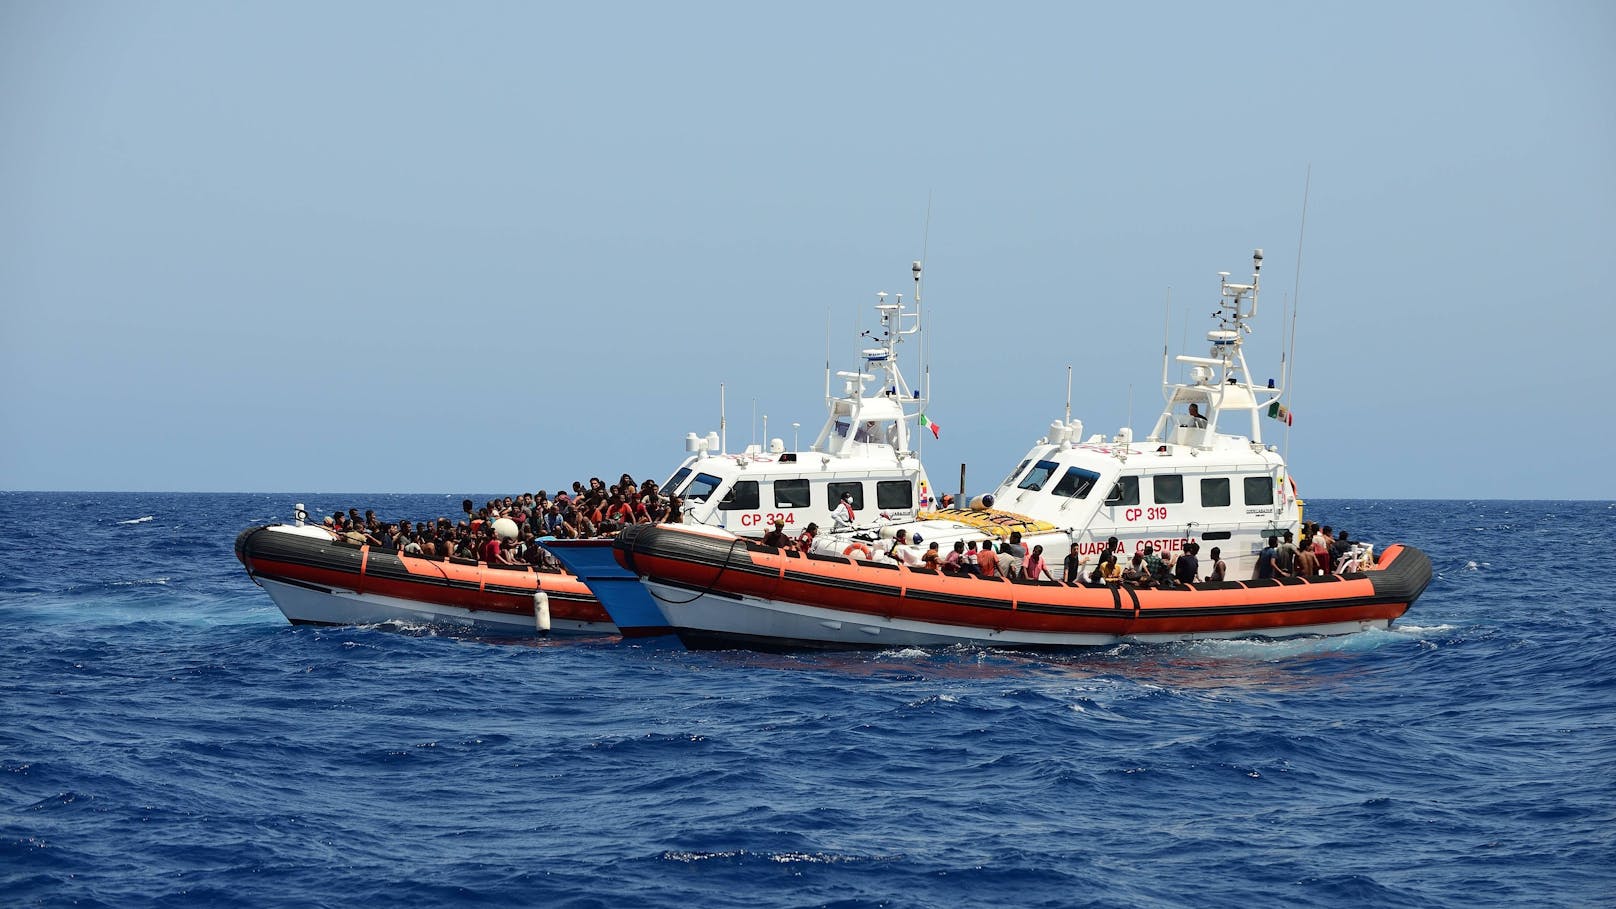 Flüchtlingsdrama im Mittelmeer – mindestens 11 Tote